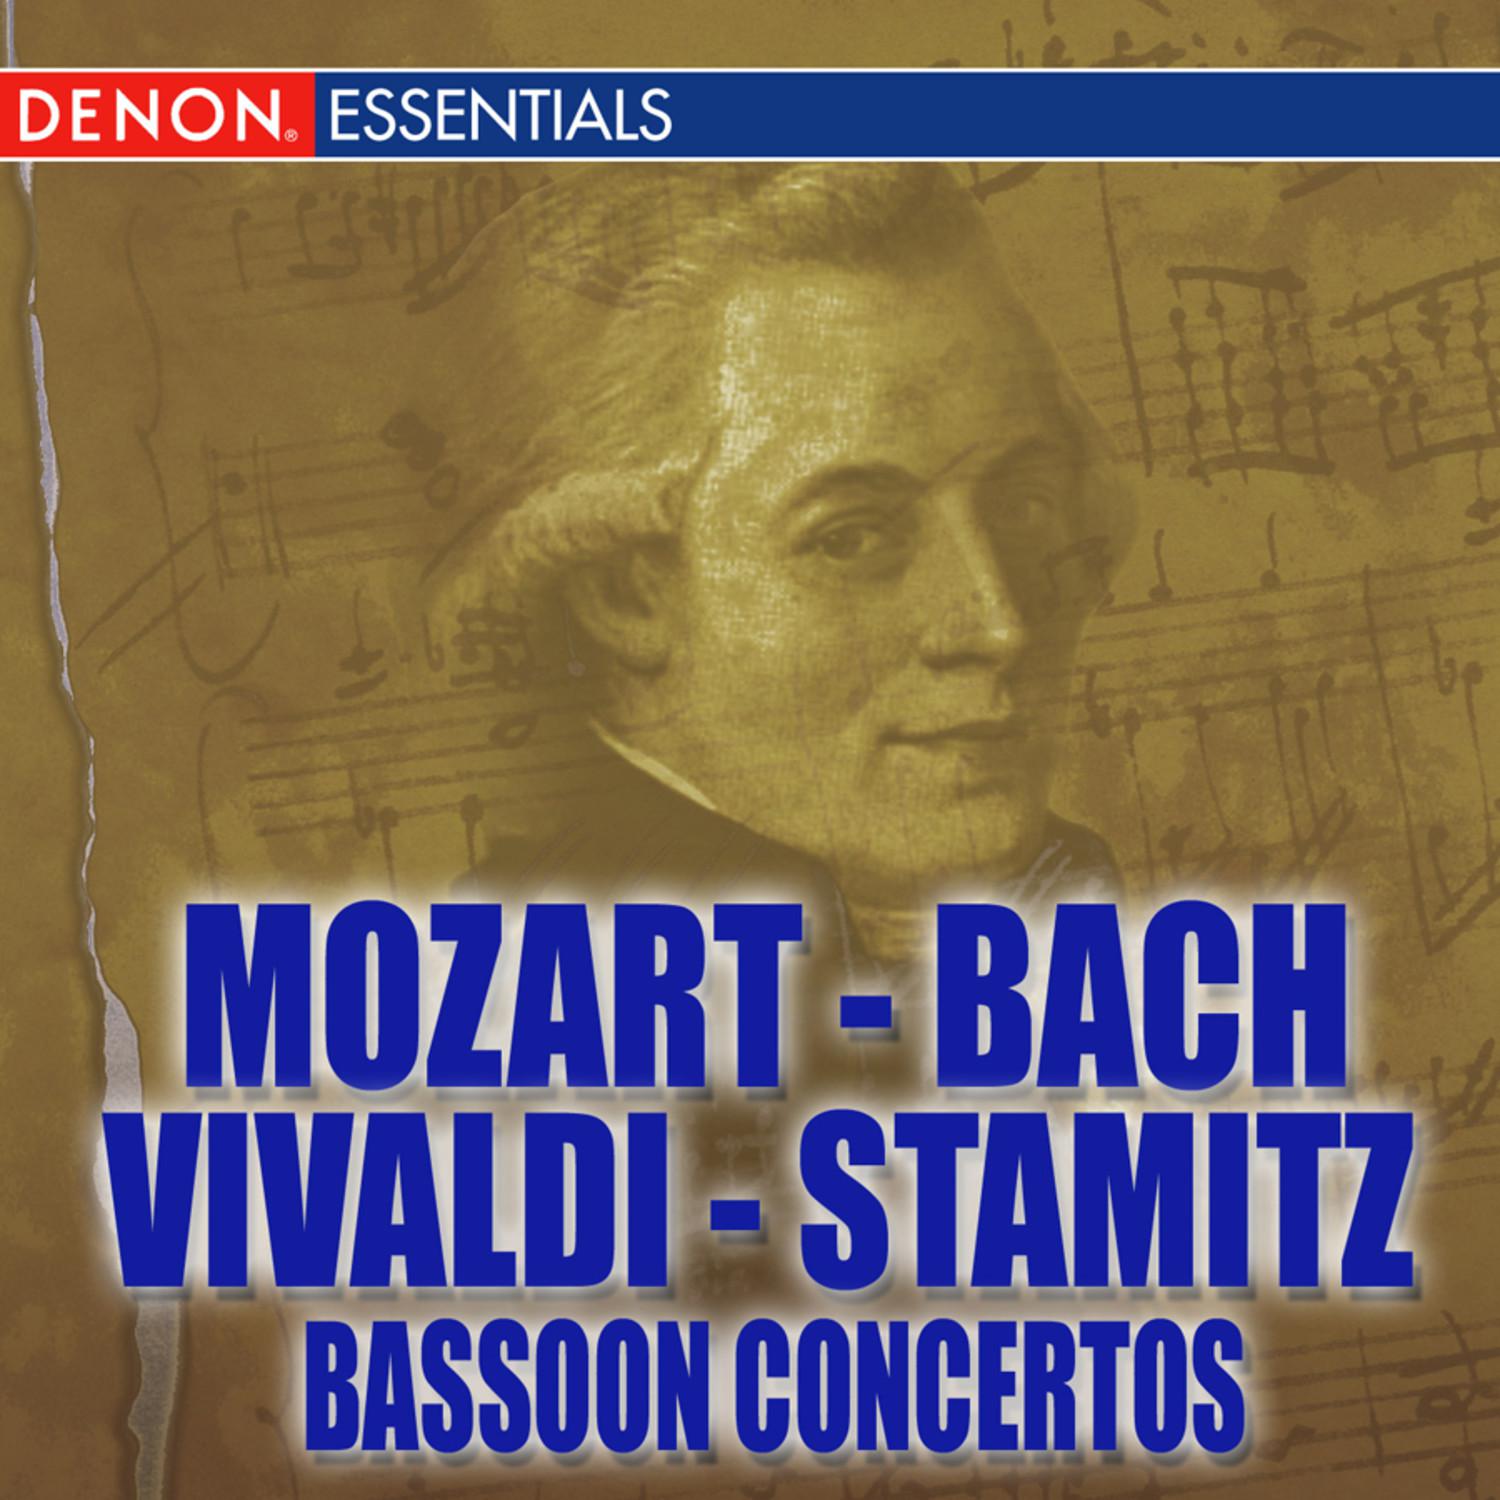 Bassoon Concerto in B-Flat Major, K. 191: III. Rondo: tempo di menuetto